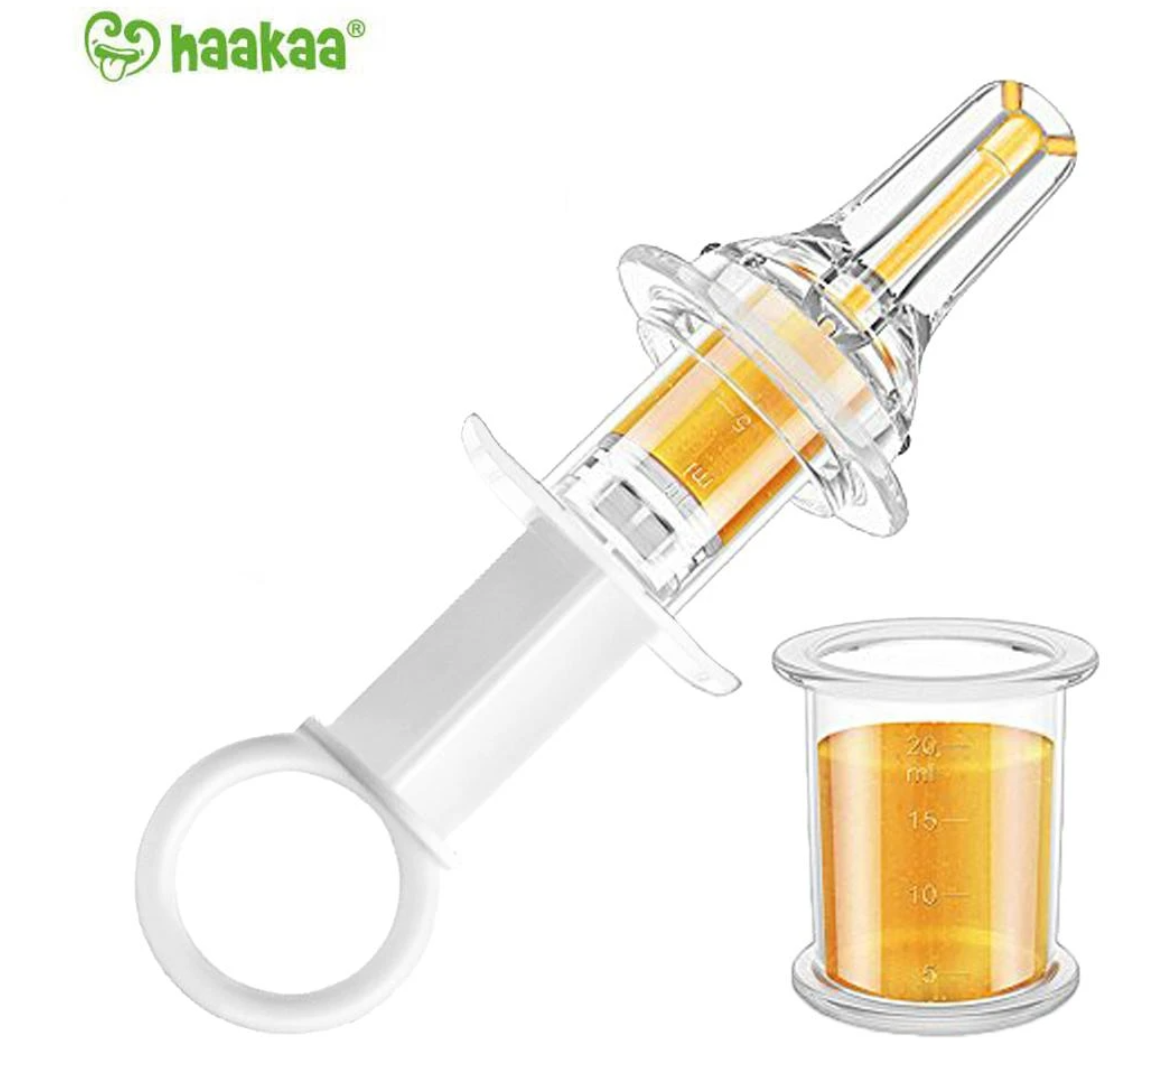 Haakaa Oral Syringe